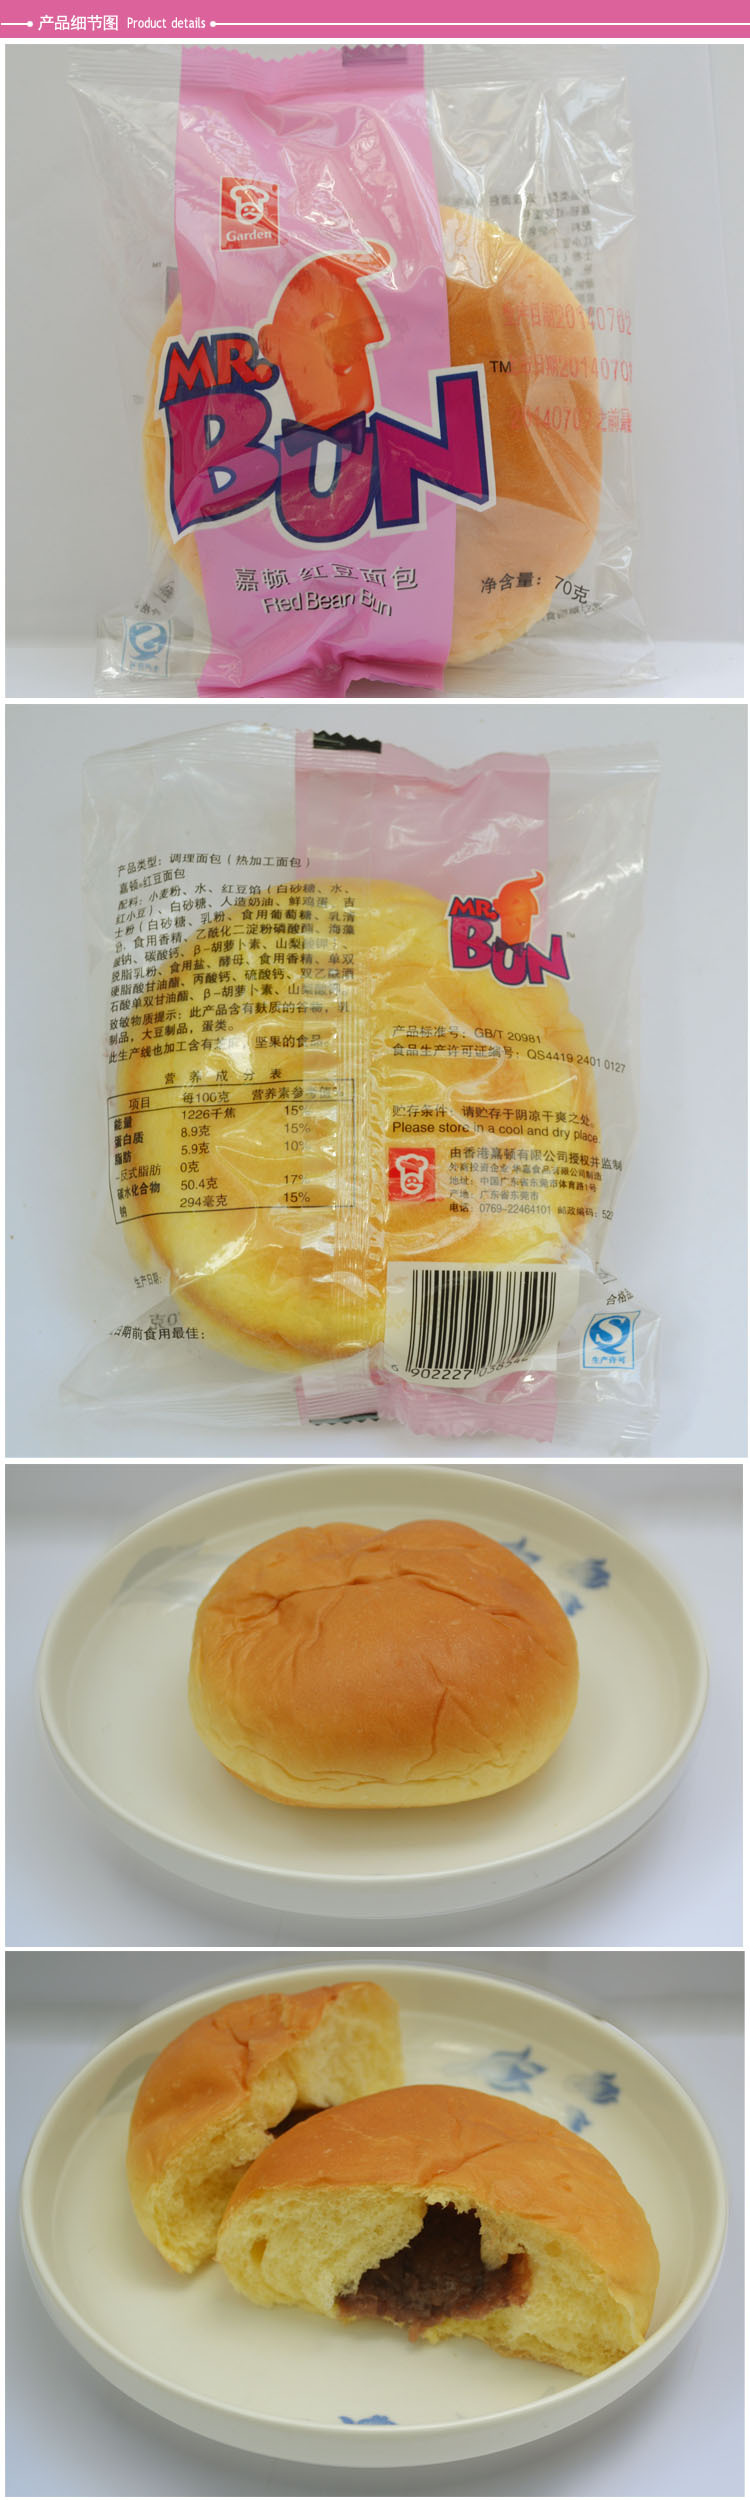 嘉顿 新鲜面包红豆包70g/个 新鲜到家 广州市内免费配送